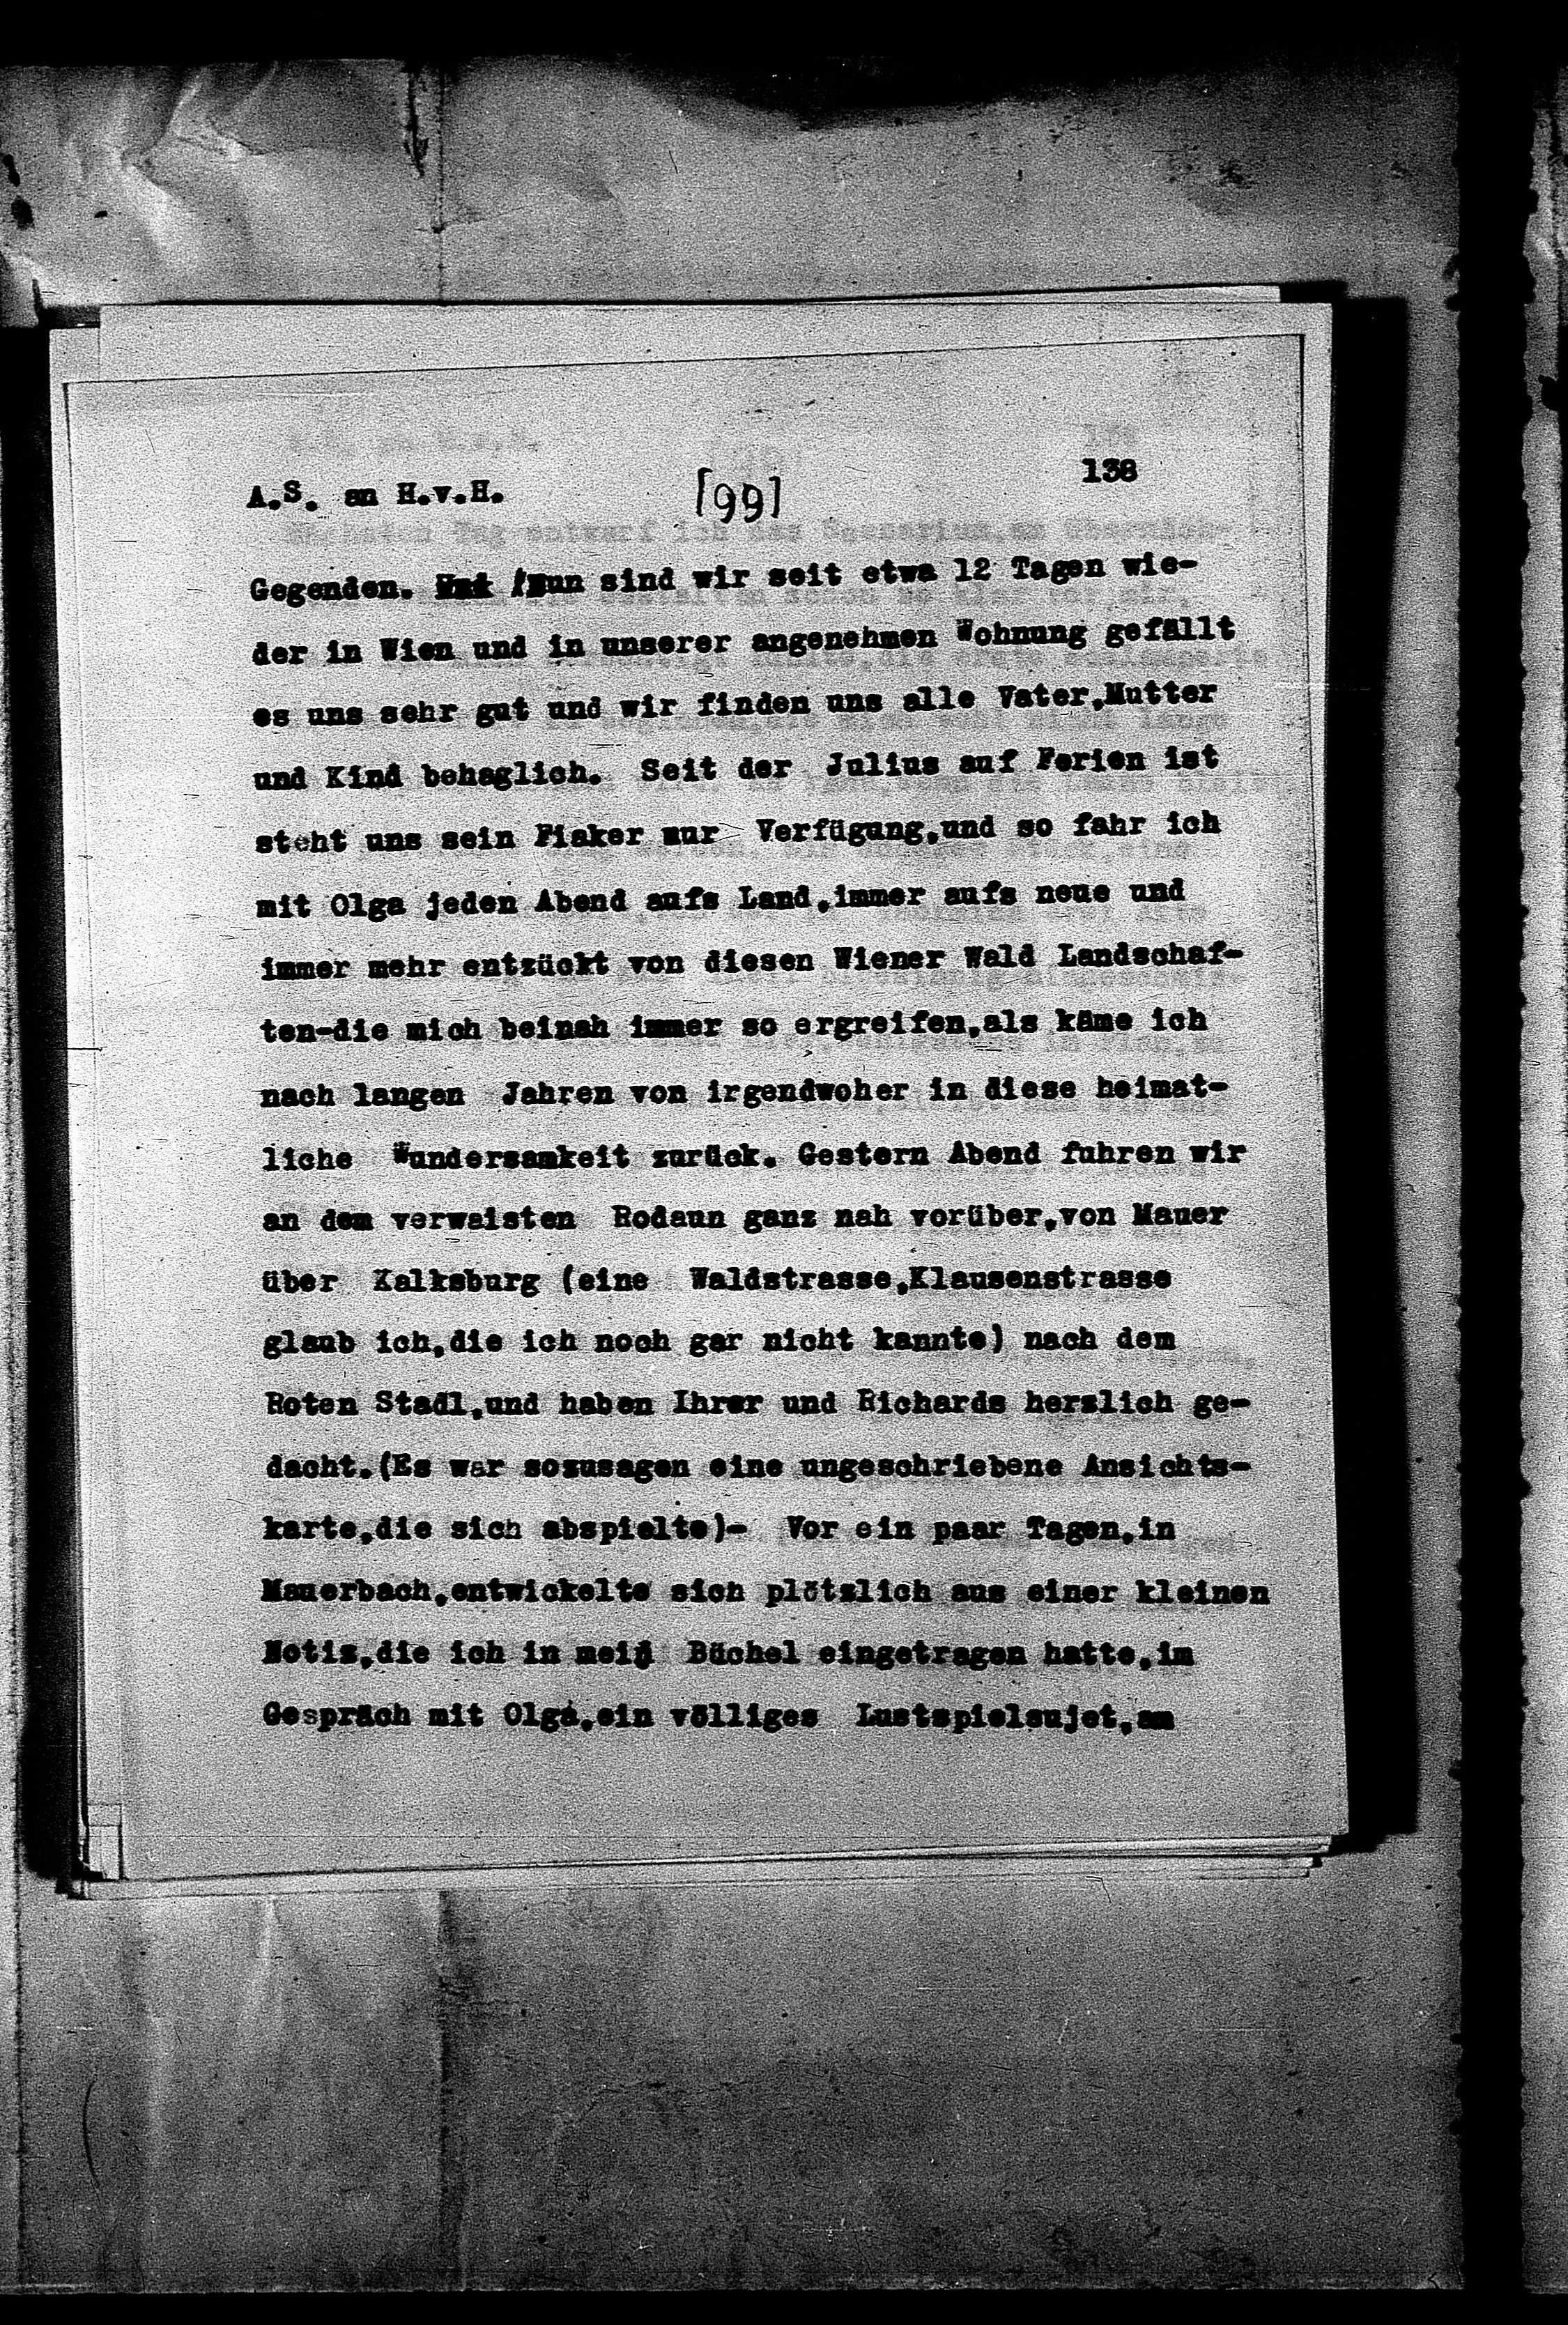 Vorschaubild für Hofmannsthal, Hugo von_AS an HvH Abschrift, HvH an AS, Originale (Mikrofilm 38), Seite 144